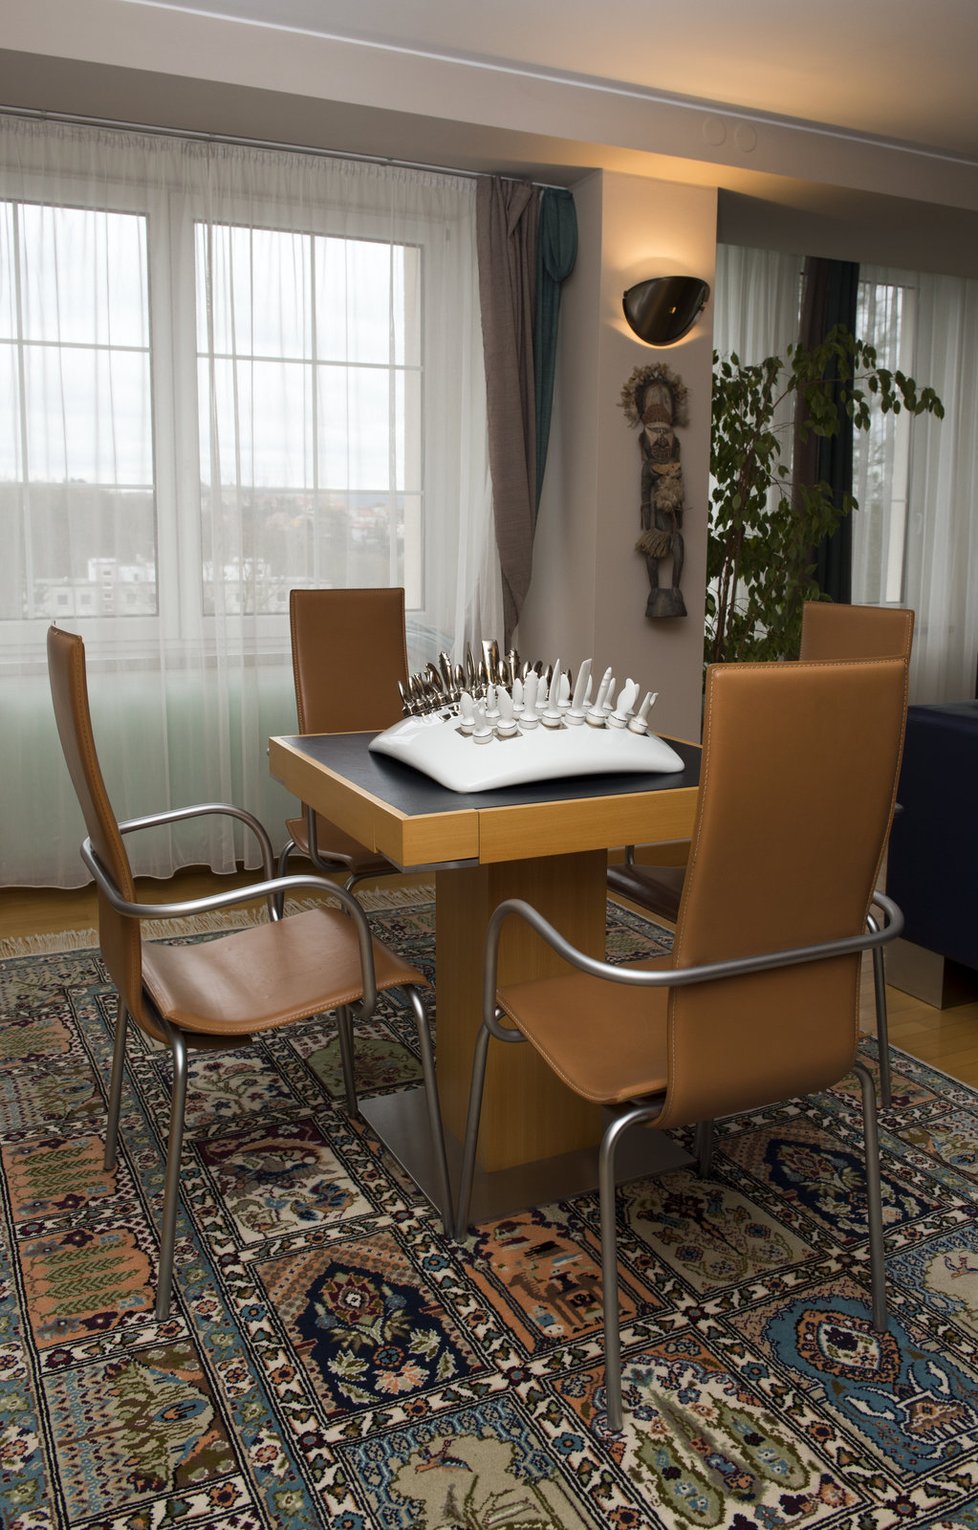 Nezvyklá šachovnice byl dárek od designérské firmy, která Lešku Wronkovi zařizovala celý interiér domu.